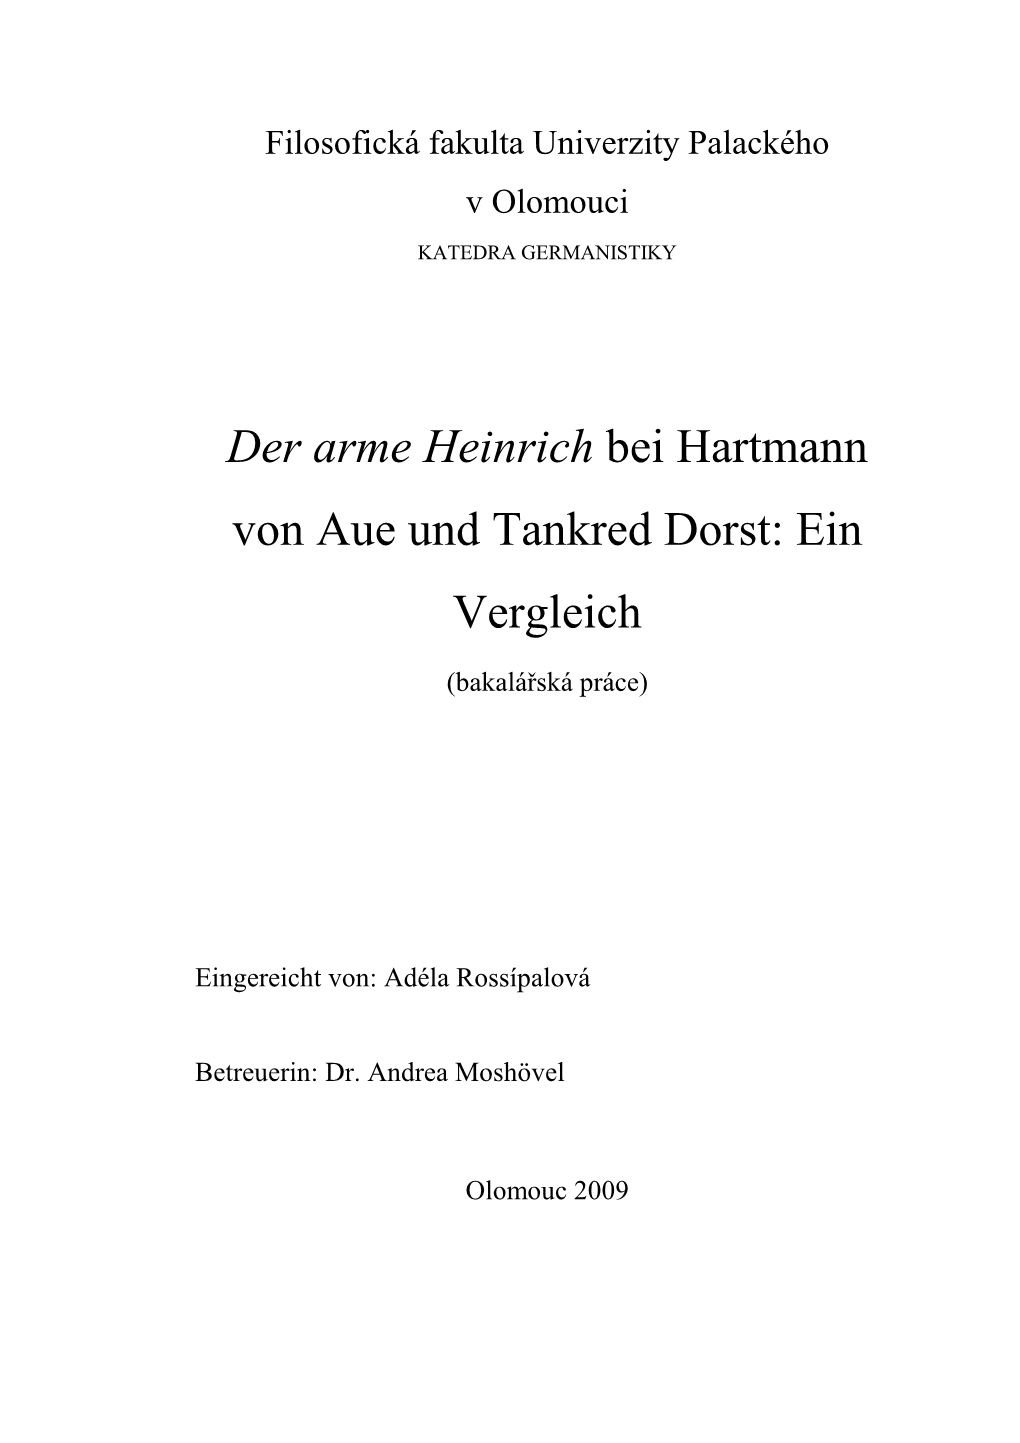 Der Arme Heinrich Bei Hartmann Von Aue Und Tankred Dorst: Ein Vergleich